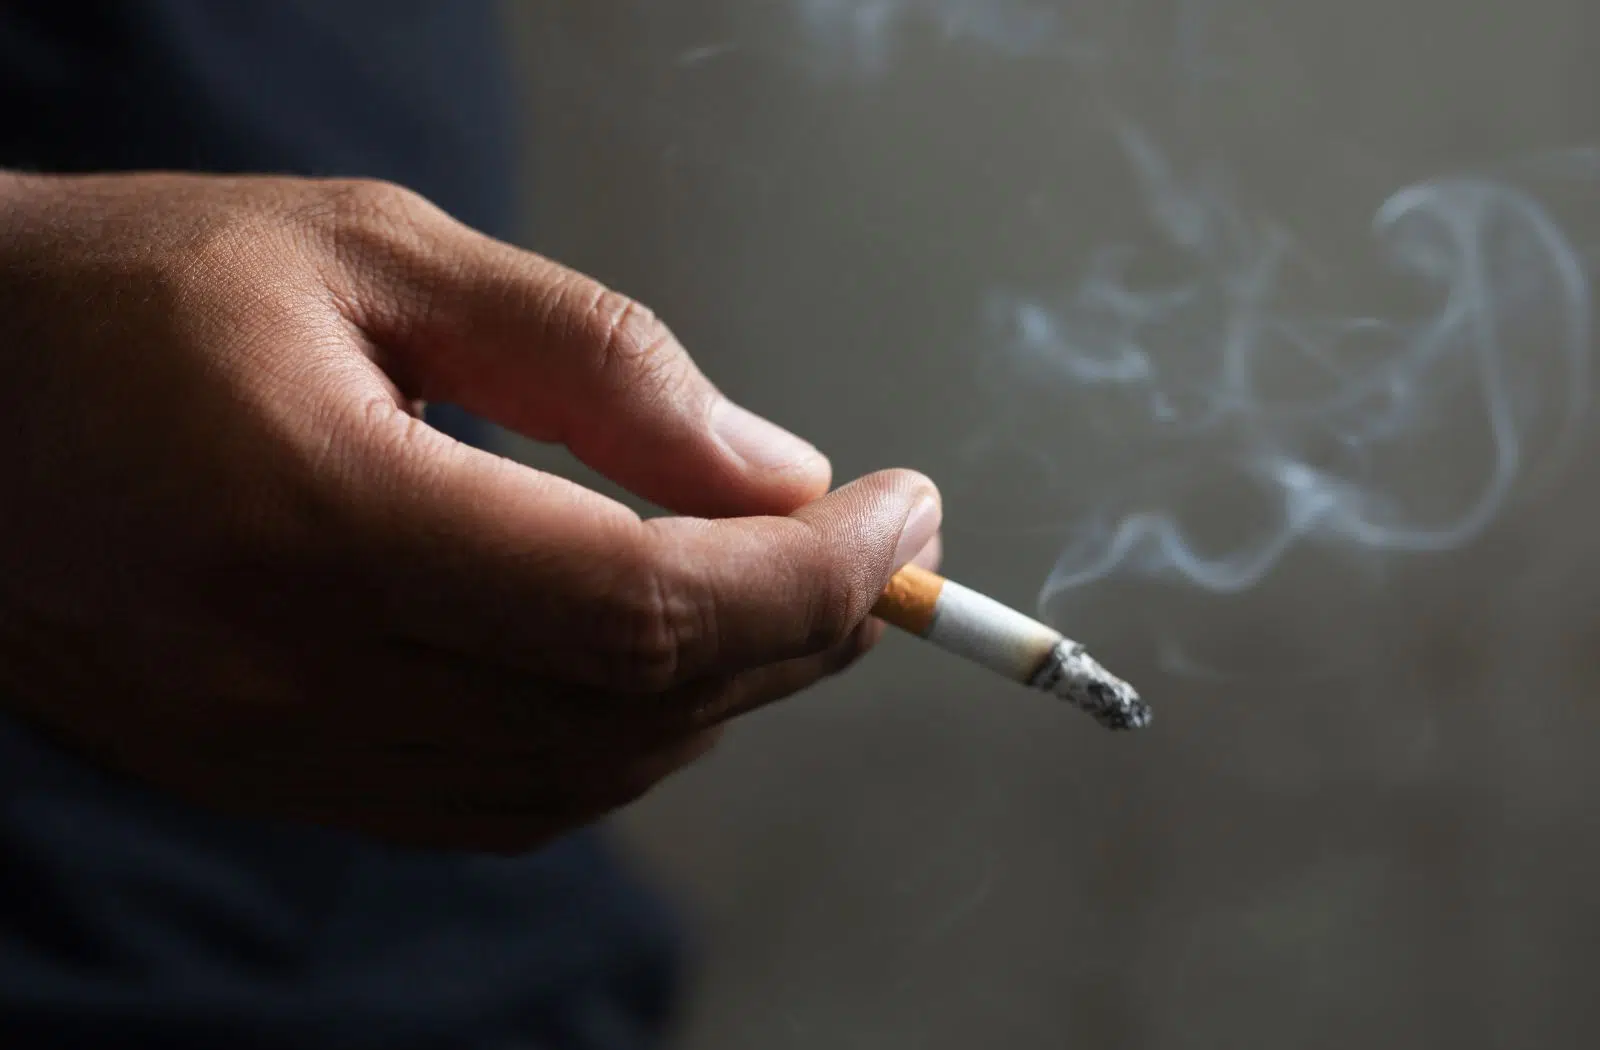 Zigarette in Hand. Vergleich Rauchen und Dampfen.